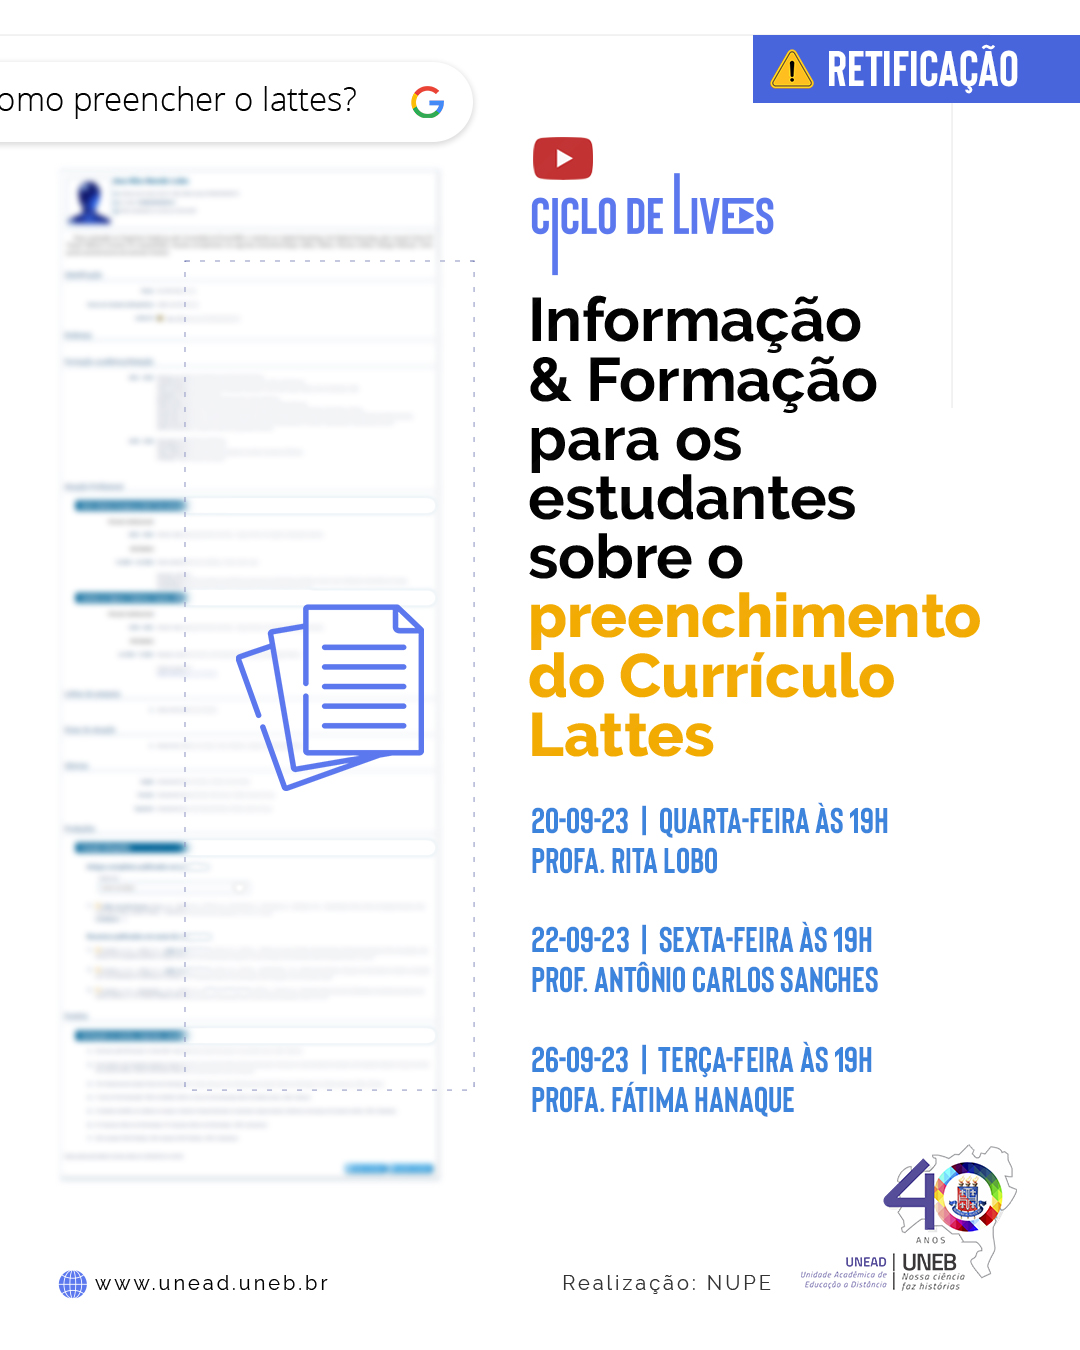 RETIFICAÇÃO – Unead convida para o Ciclo de Lives: Informação e Formação para os estudantes sobre o preenchimento do Currículo Lattes., no canal do Youtube da Unead.